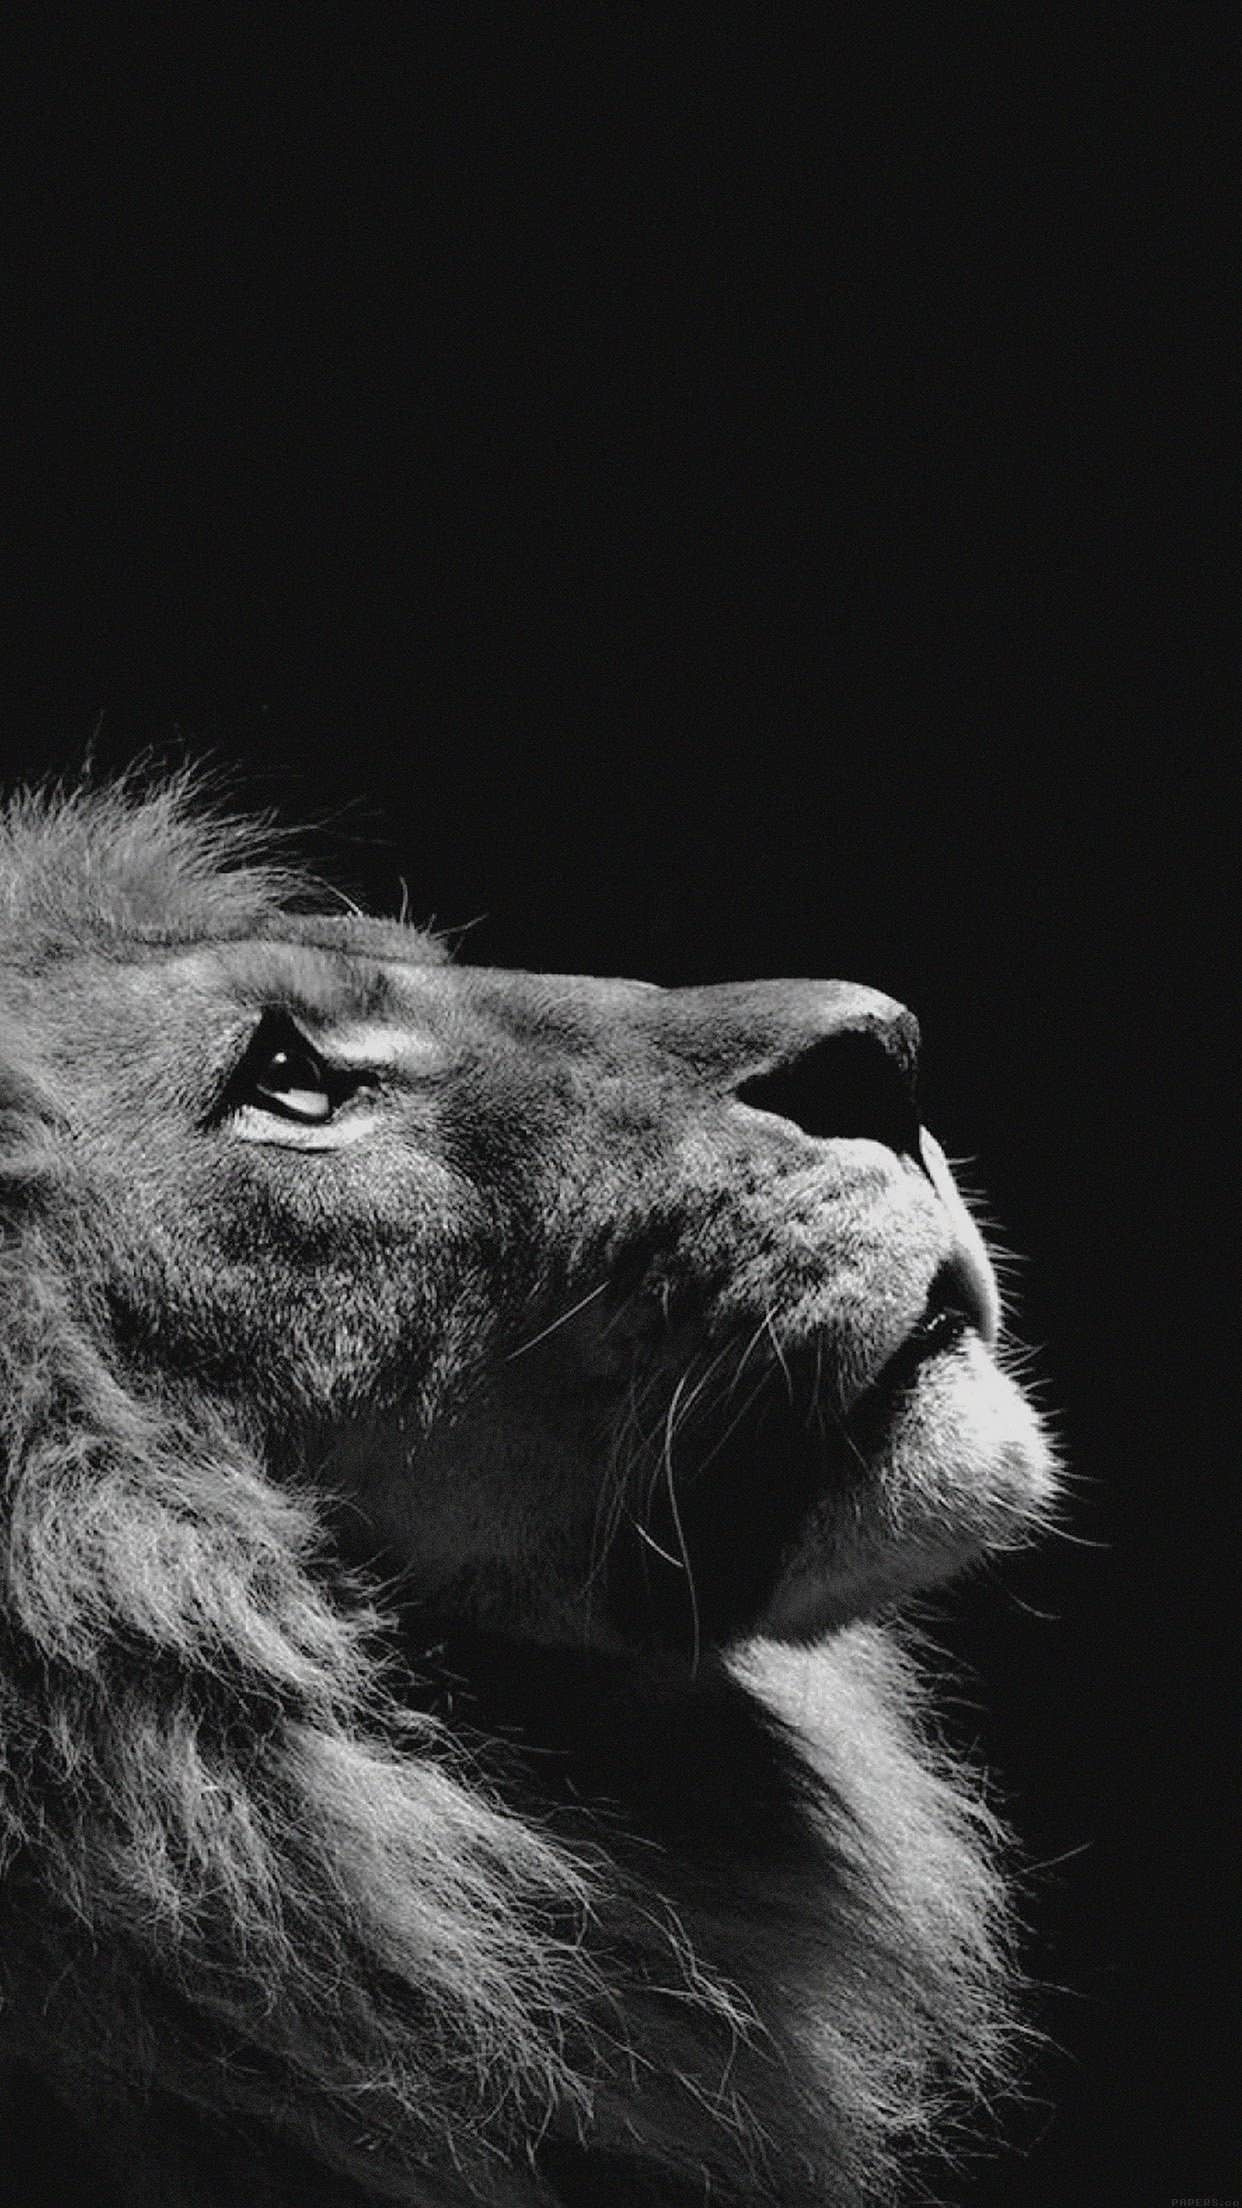 Wallpaper ID: 52432 / roar, lion, animals, 4k, 5k, hd free download